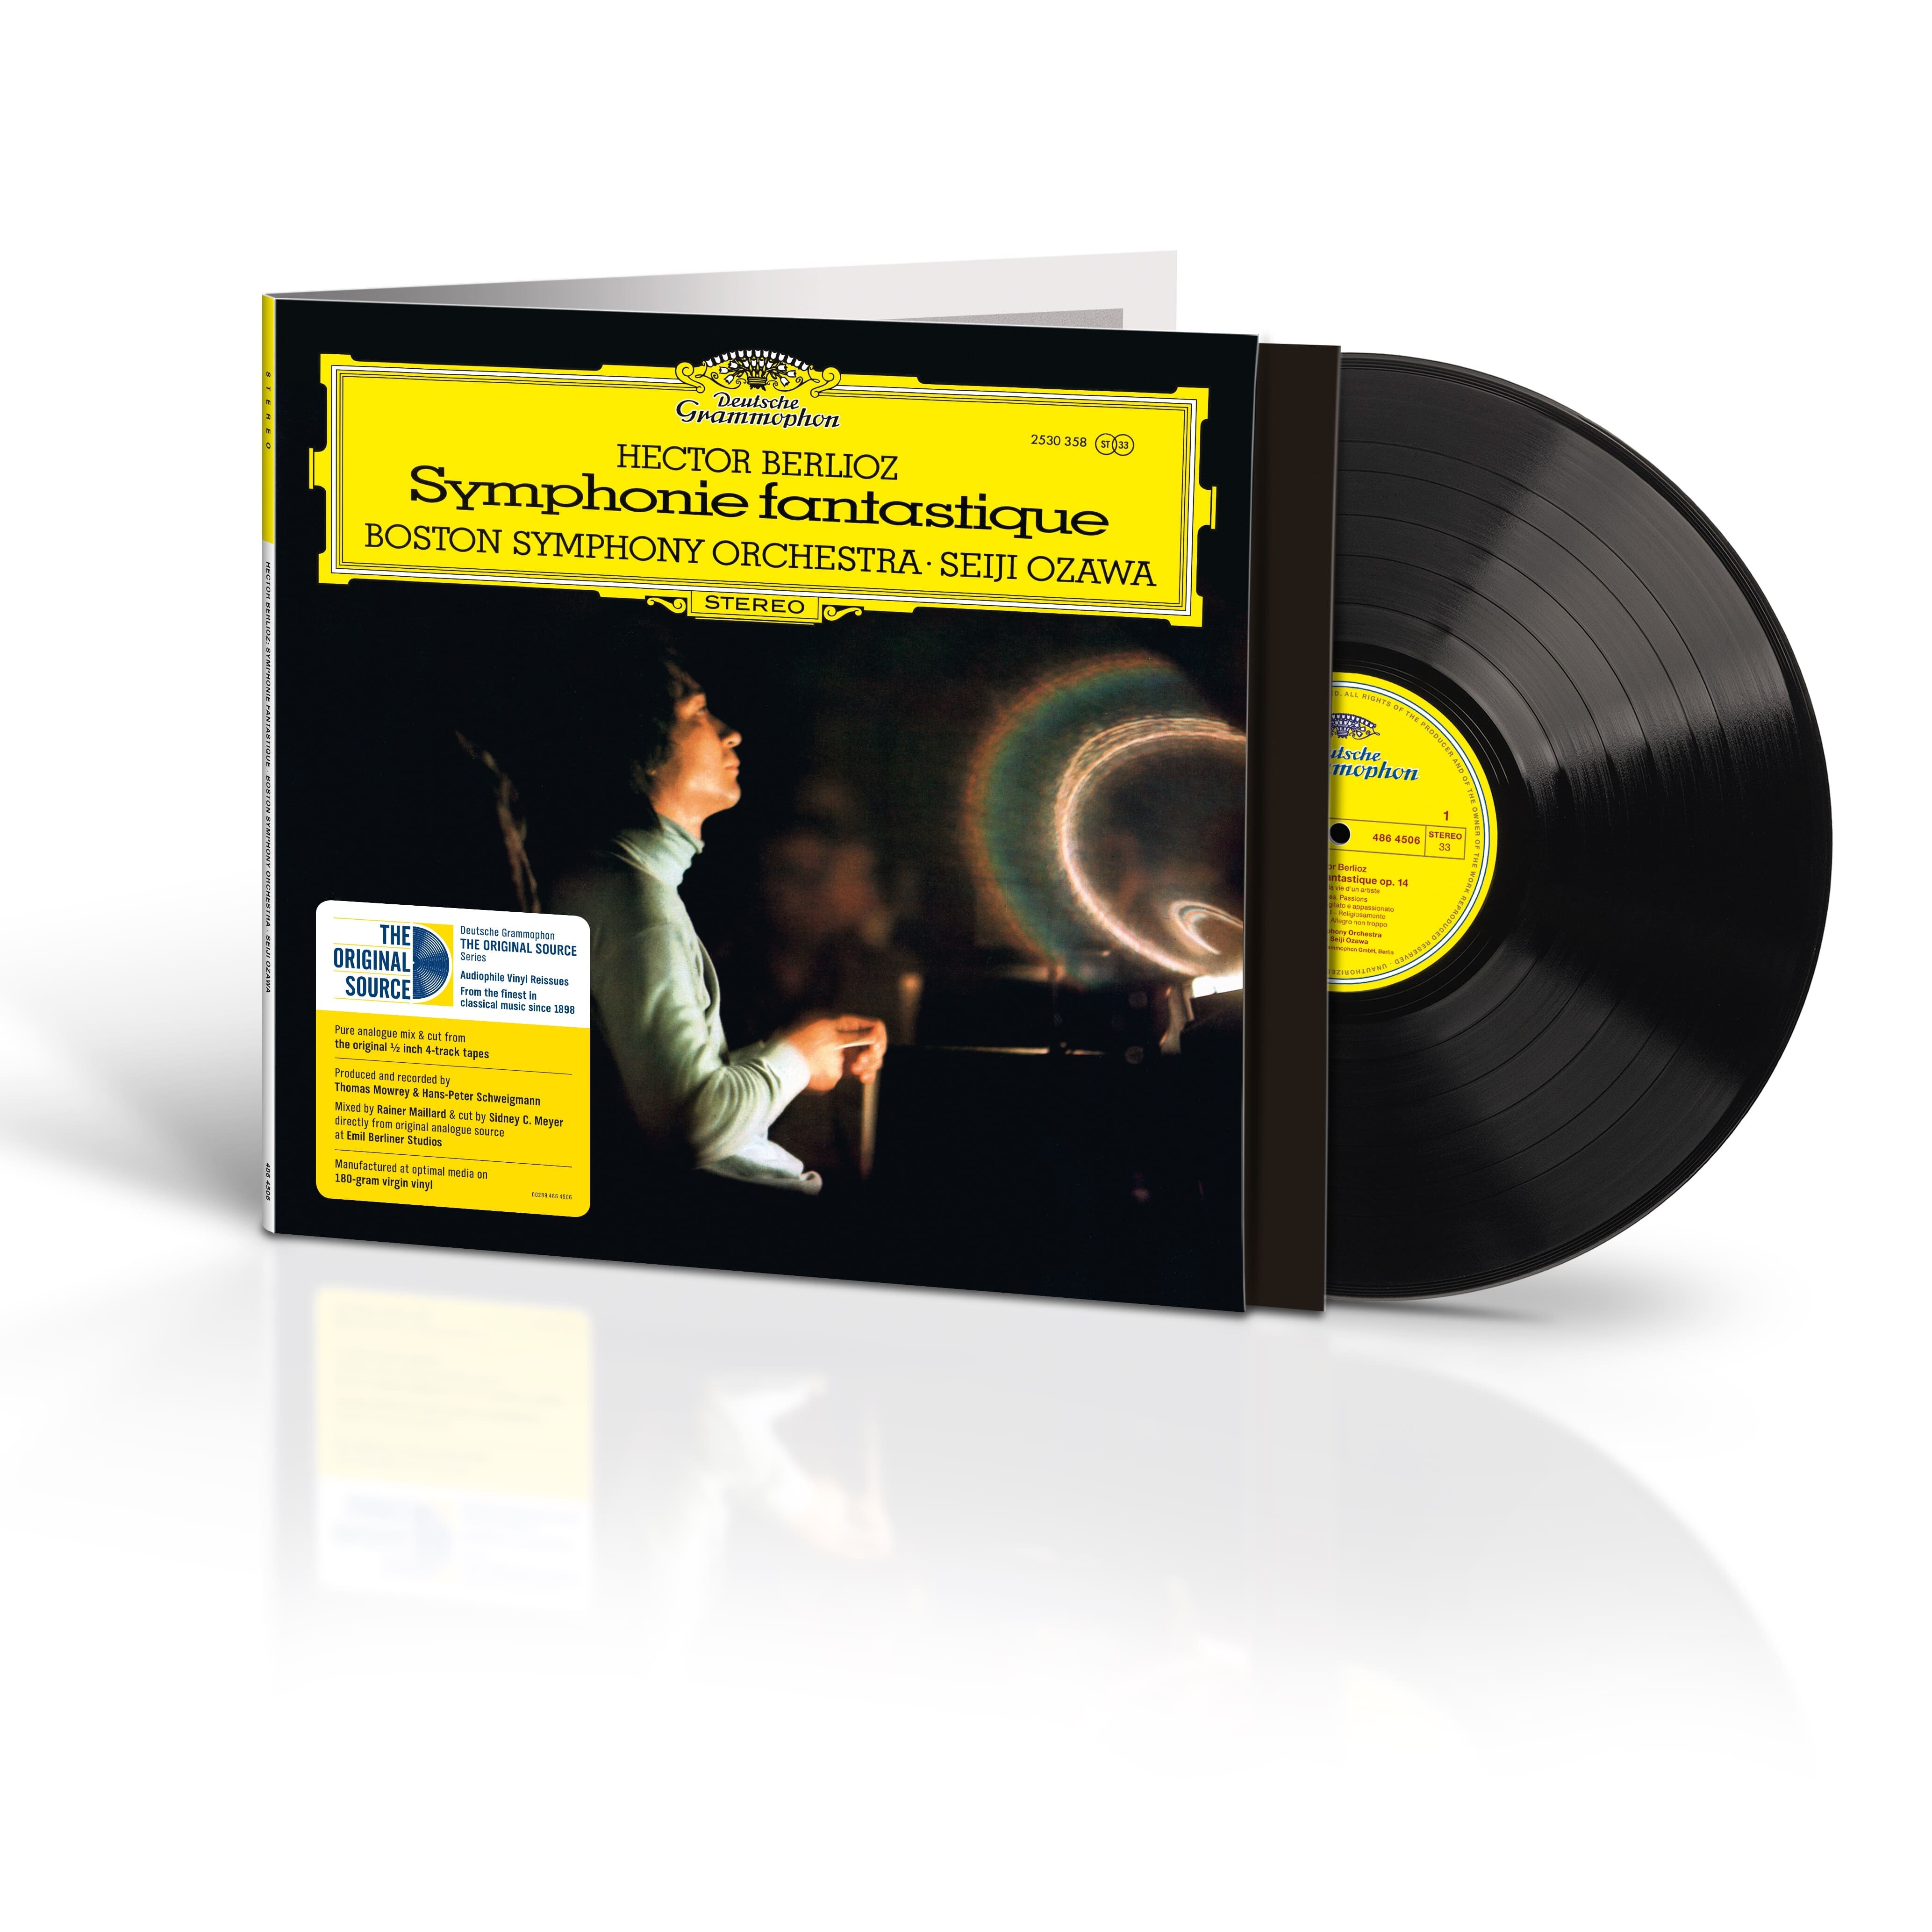 Deutsche Grammophon - Der offizielle Shop - Hector Berlioz 